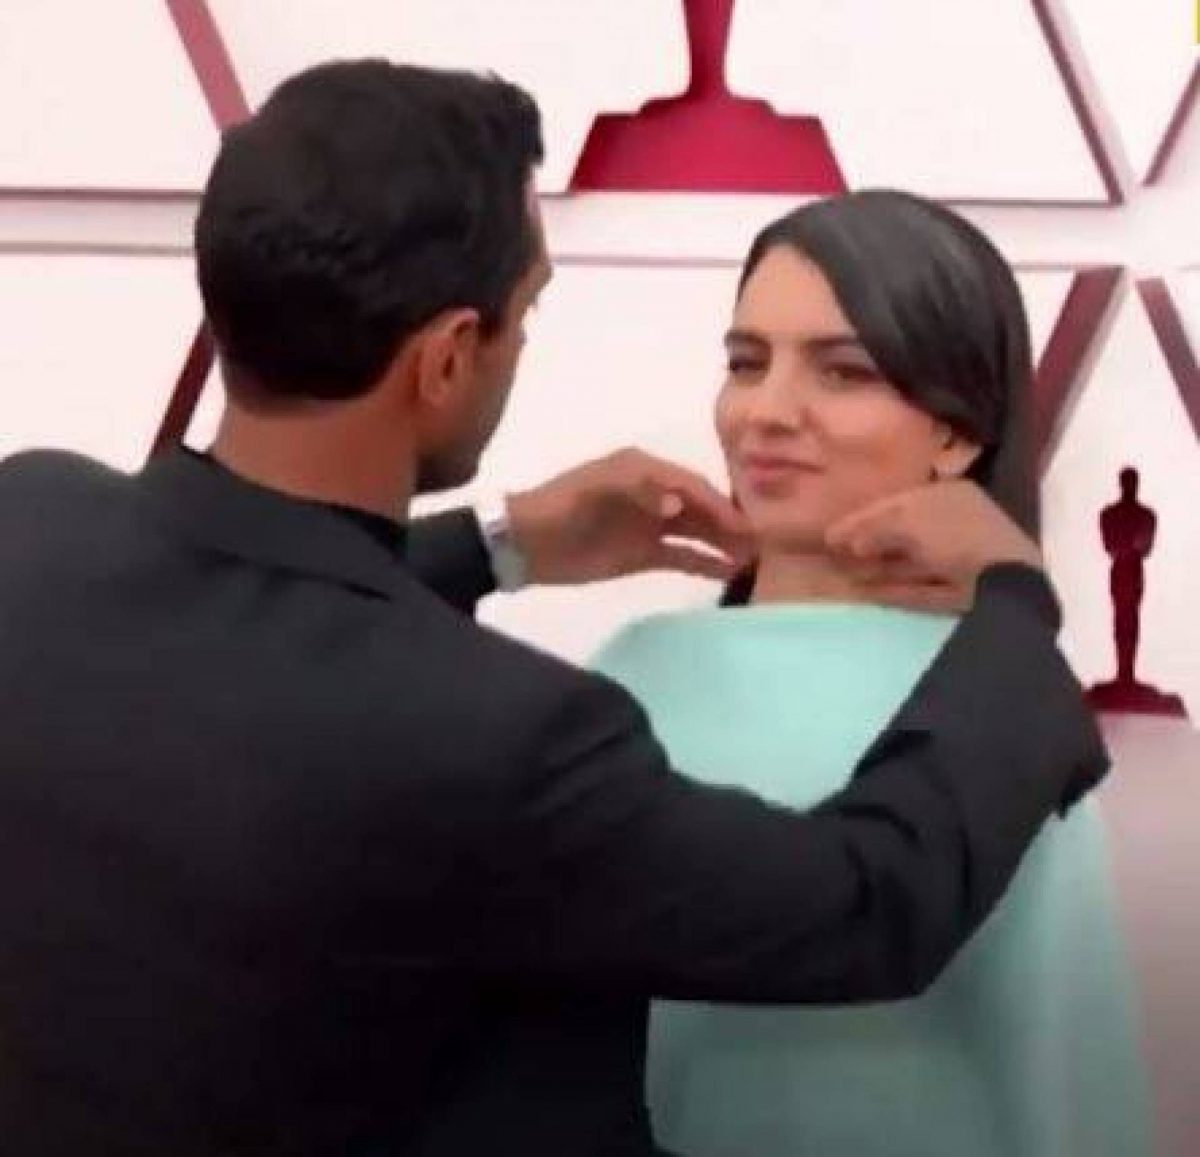 ريز أحمد يتصدر حديث الصحافة والسوشيال ميديا عندما كان يصلح شعر زوجته فاطمة ميرزا على السجادة الحمراء في حفل جوائز الأوسكار